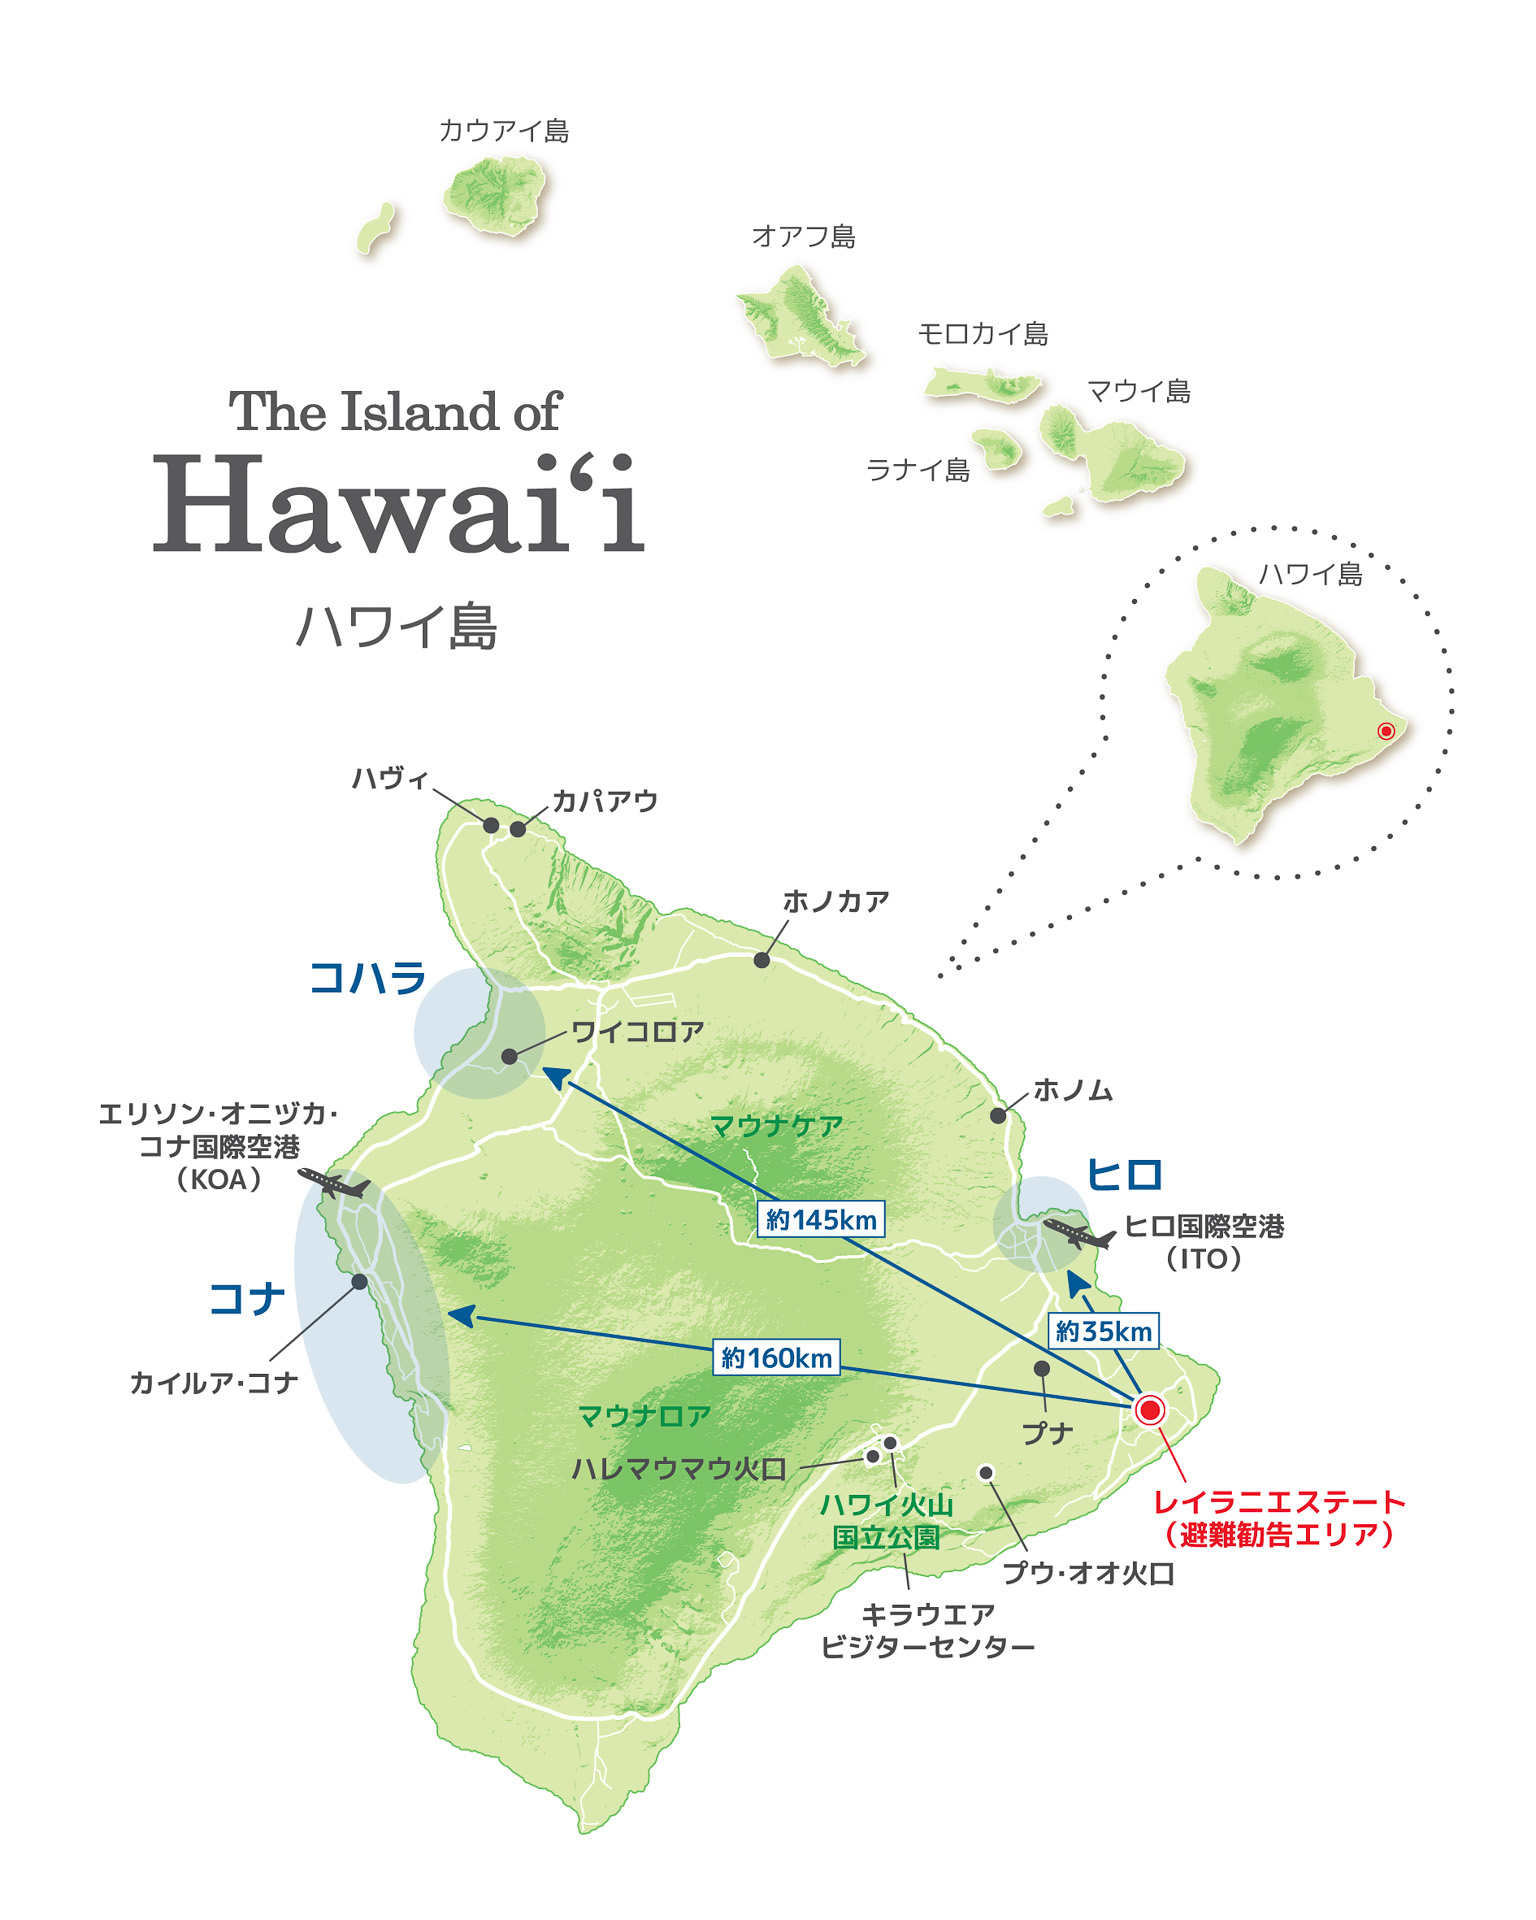 ハワイ州観光局 ハワイ島キラウエア火山噴火の最新情報を提供 観光の中心部コハラ地区 コナ地区からは約145 160km 空港 アクティビティともに通常どおり営業 トラベル Watch